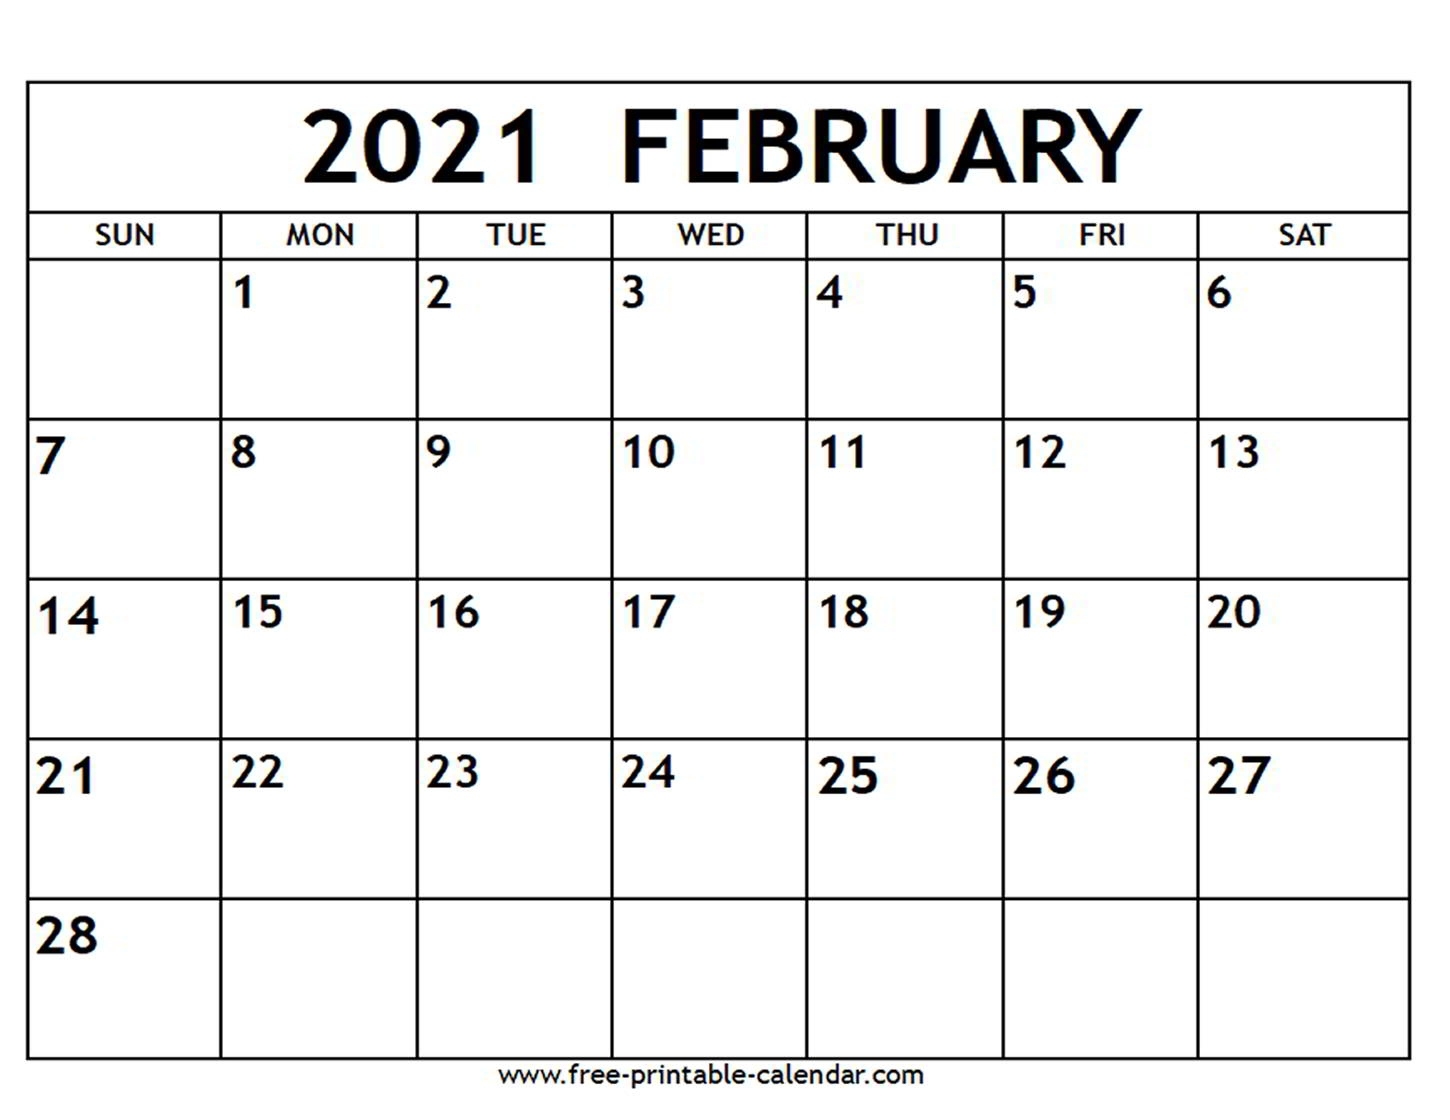 February 2021 Calendar - Free-Printable-Calendar Printable Calendar 2021